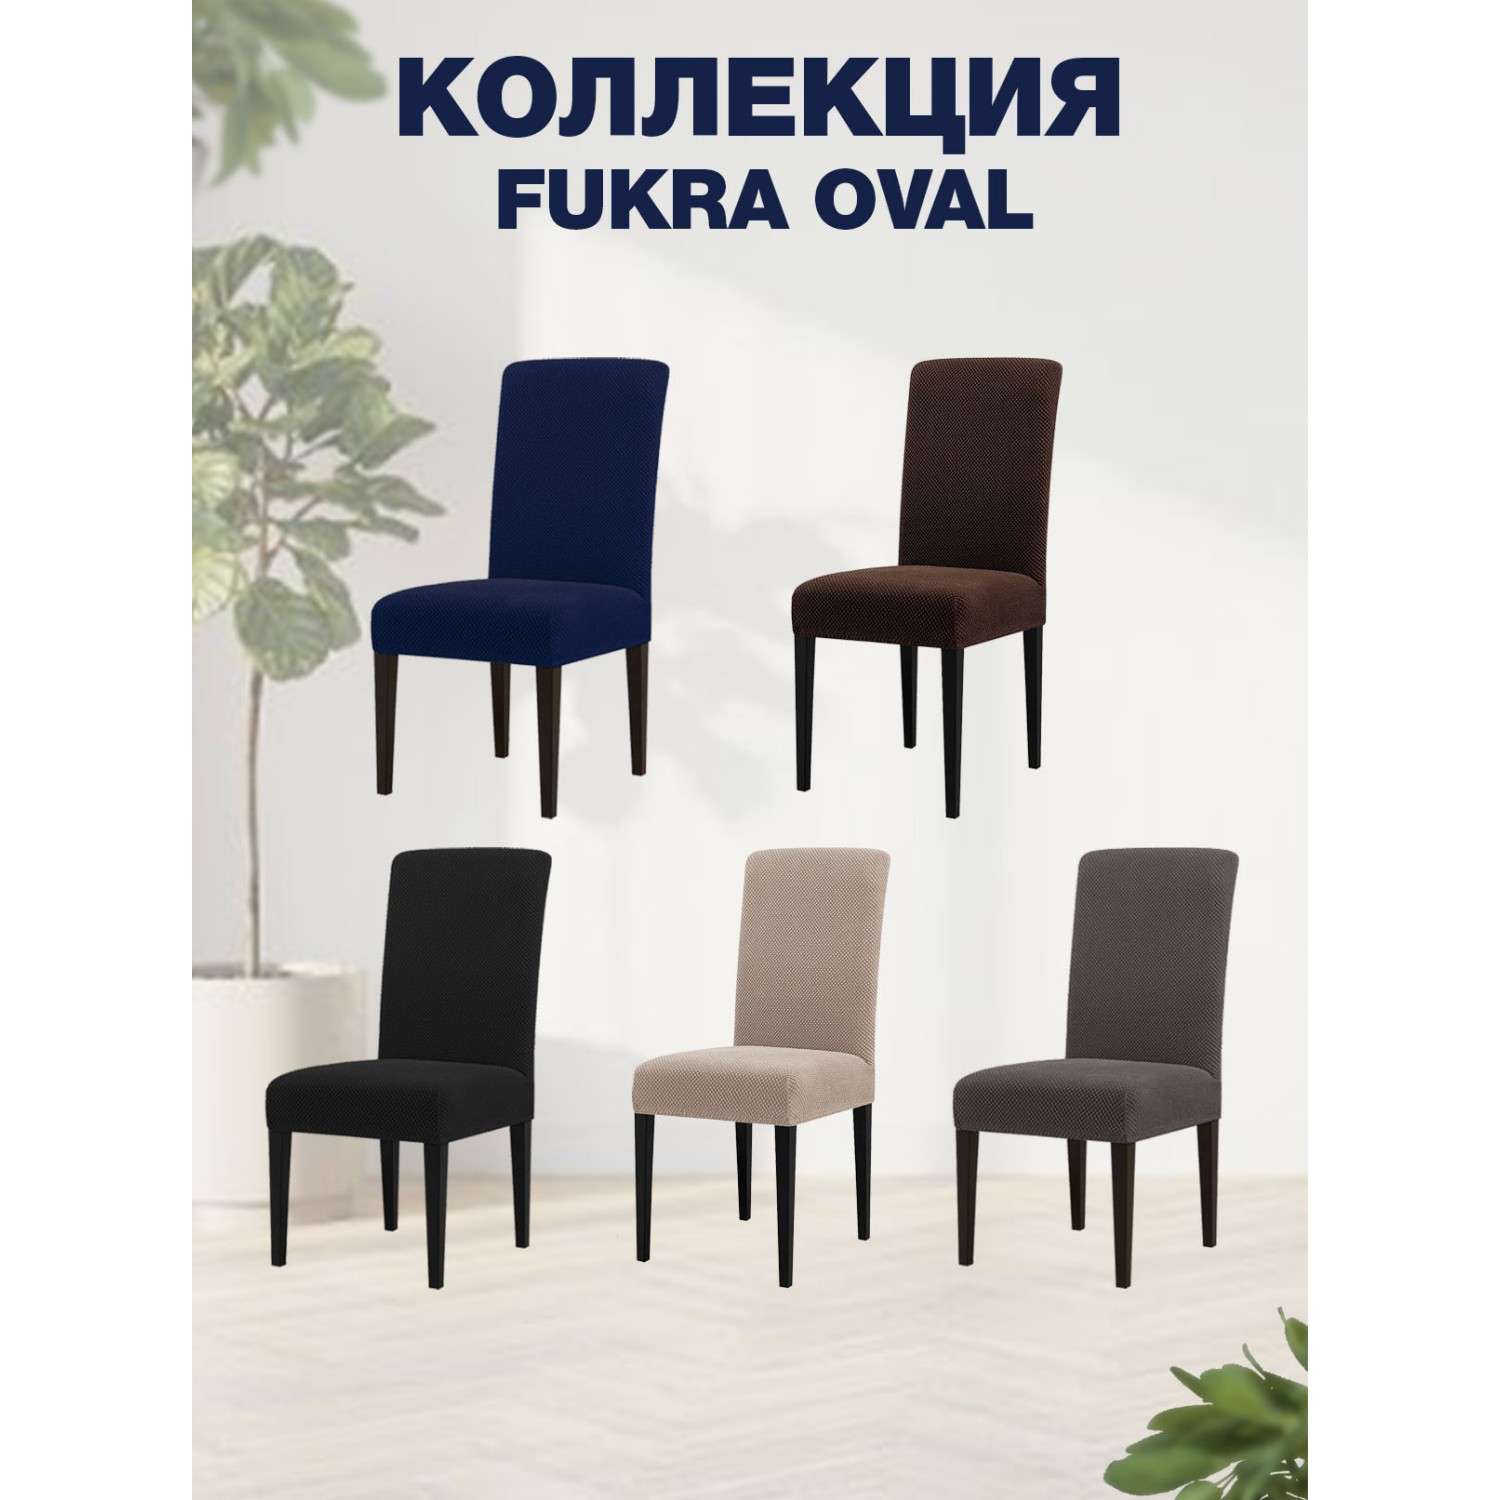 Чехол на стул LuxAlto Коллекция Fukra oval коричневый - фото 3